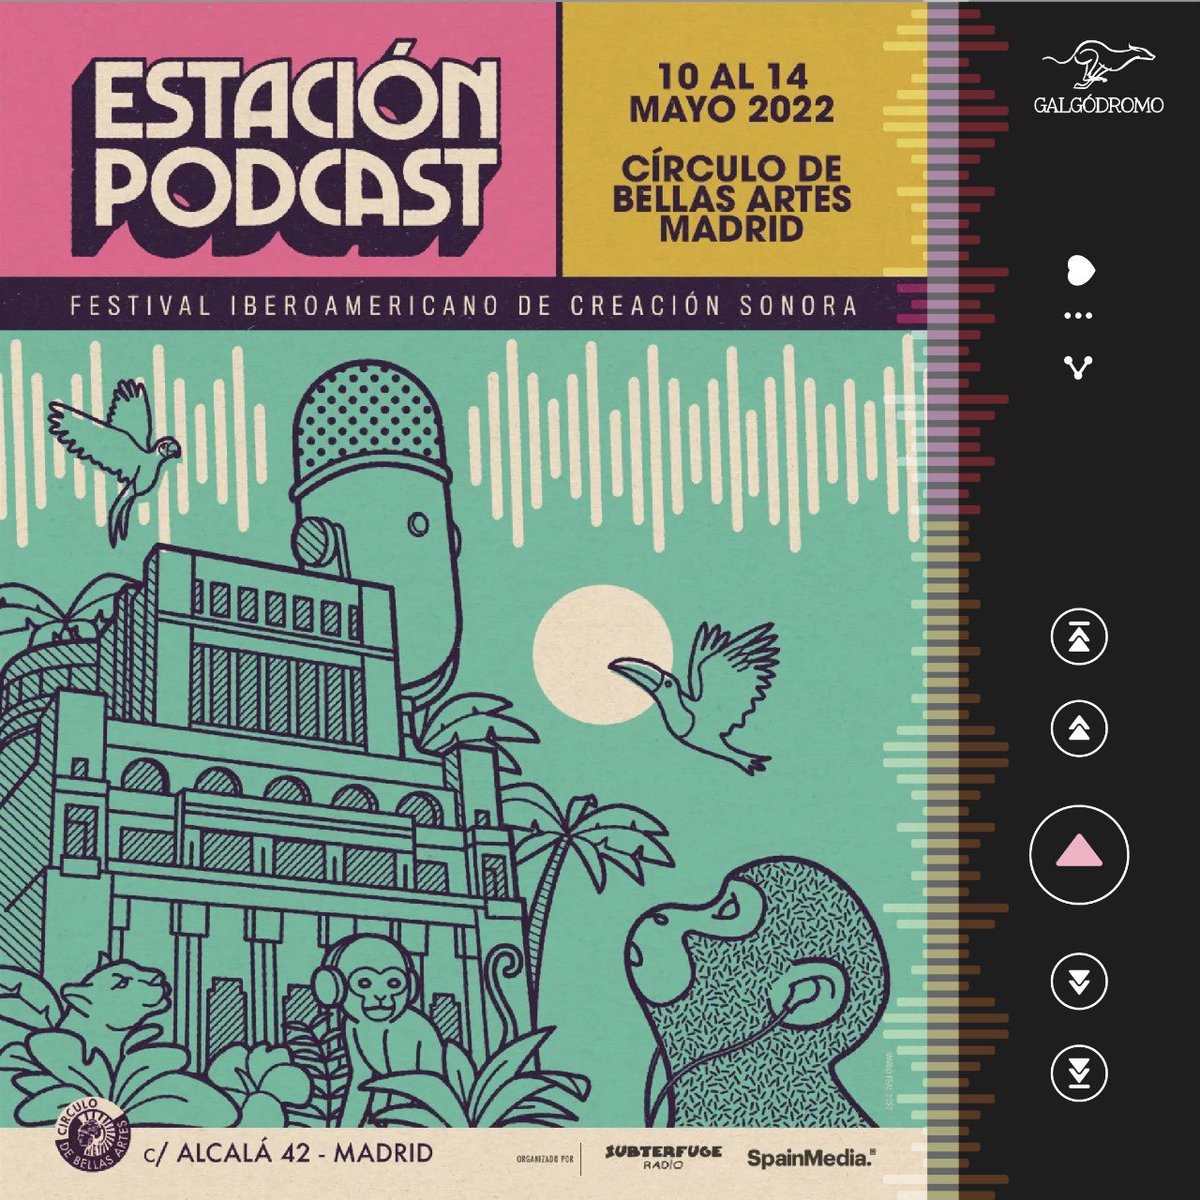 Festival Estacion podcast es el primer festival latinoamericano de creación sonora y en @pista_galgo estamos orgullosos de participar en esta primera edicion en la ciudad de Madrid, España con una de nuestras nuevas producciones: Montserrat.
@estacionpodcast #podcast #montserrat